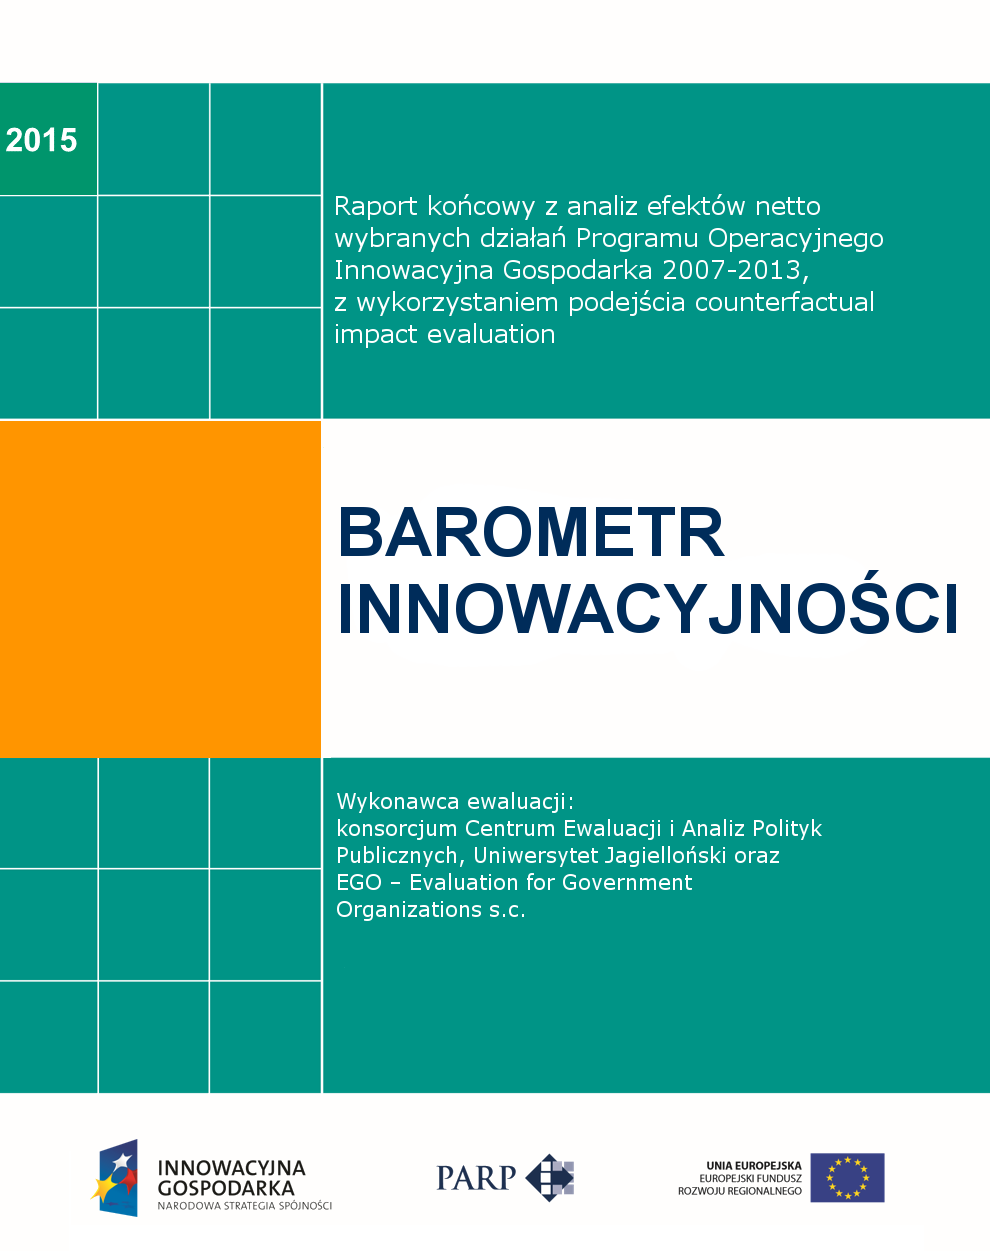 barometr_innowacyjnosci_netto_rk.png